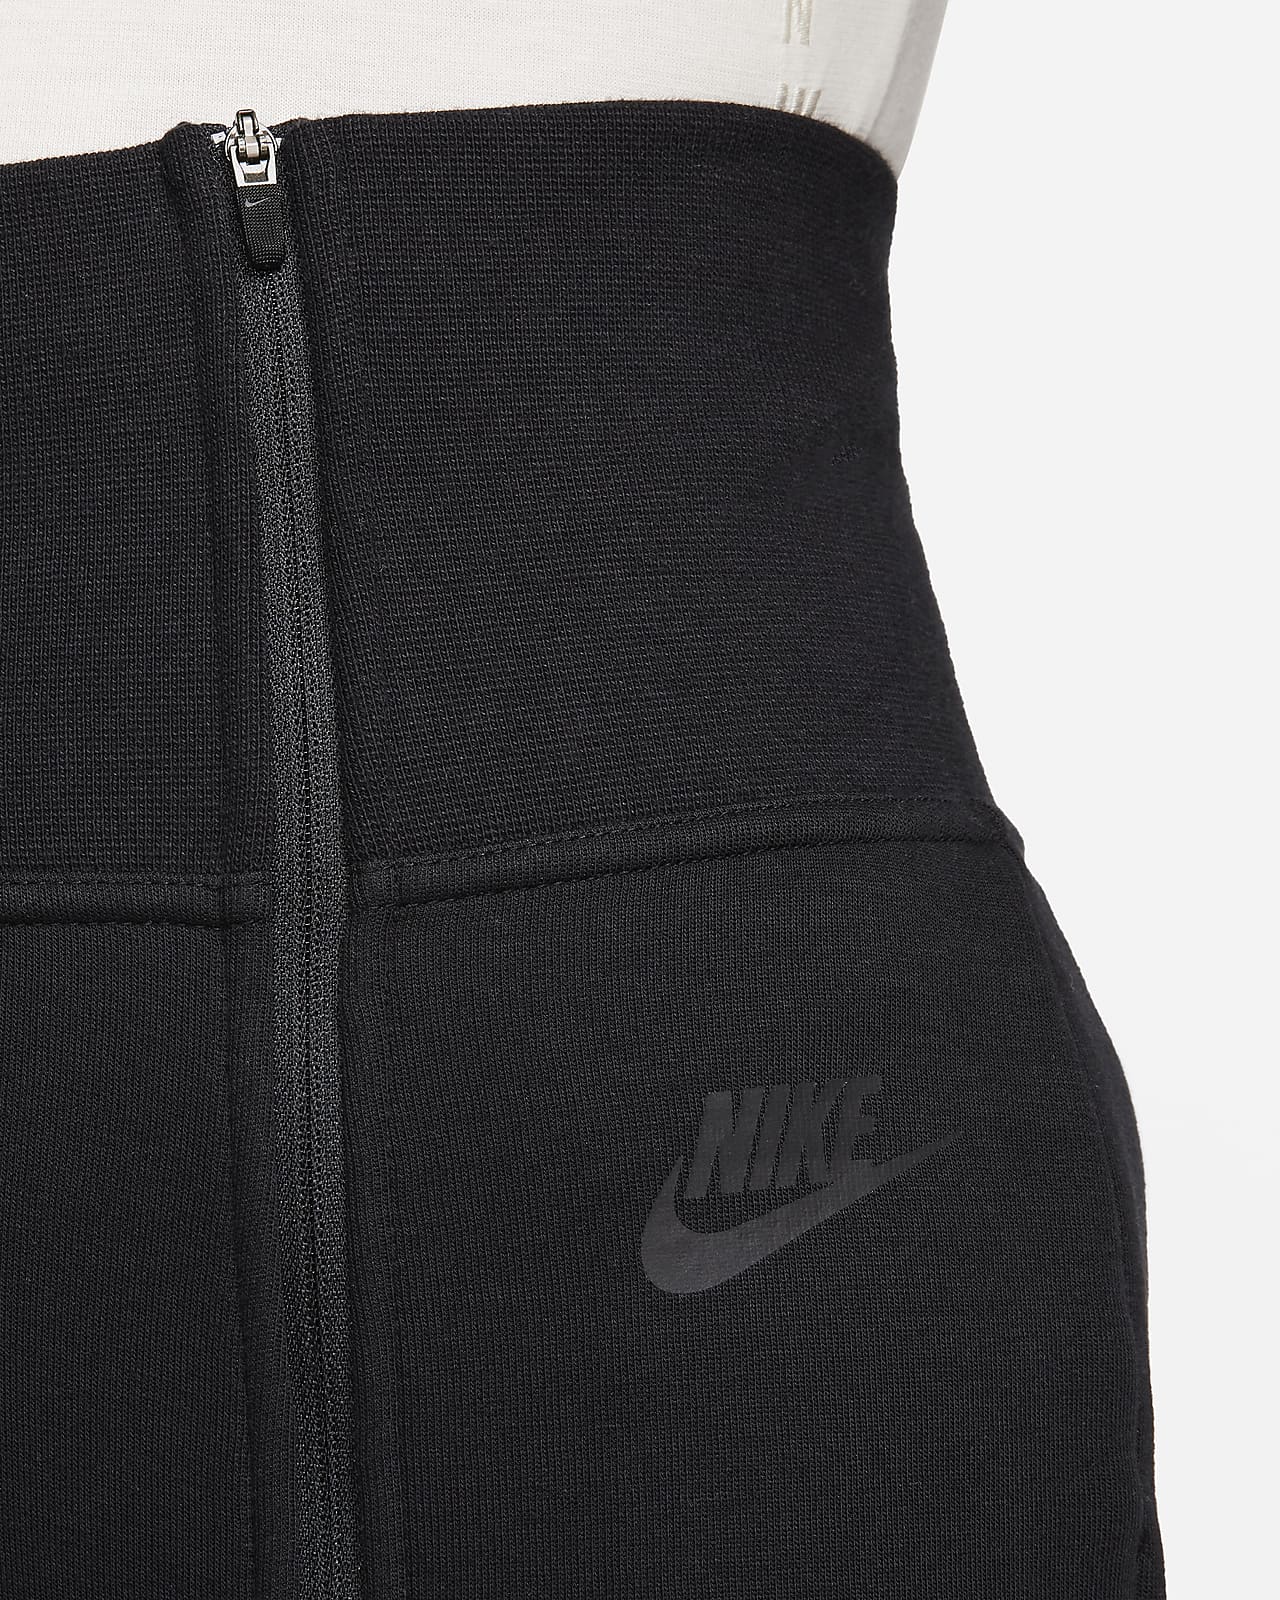 Nike Sportswear Tech Fleece Women's High-Waisted Slim Zip Pants